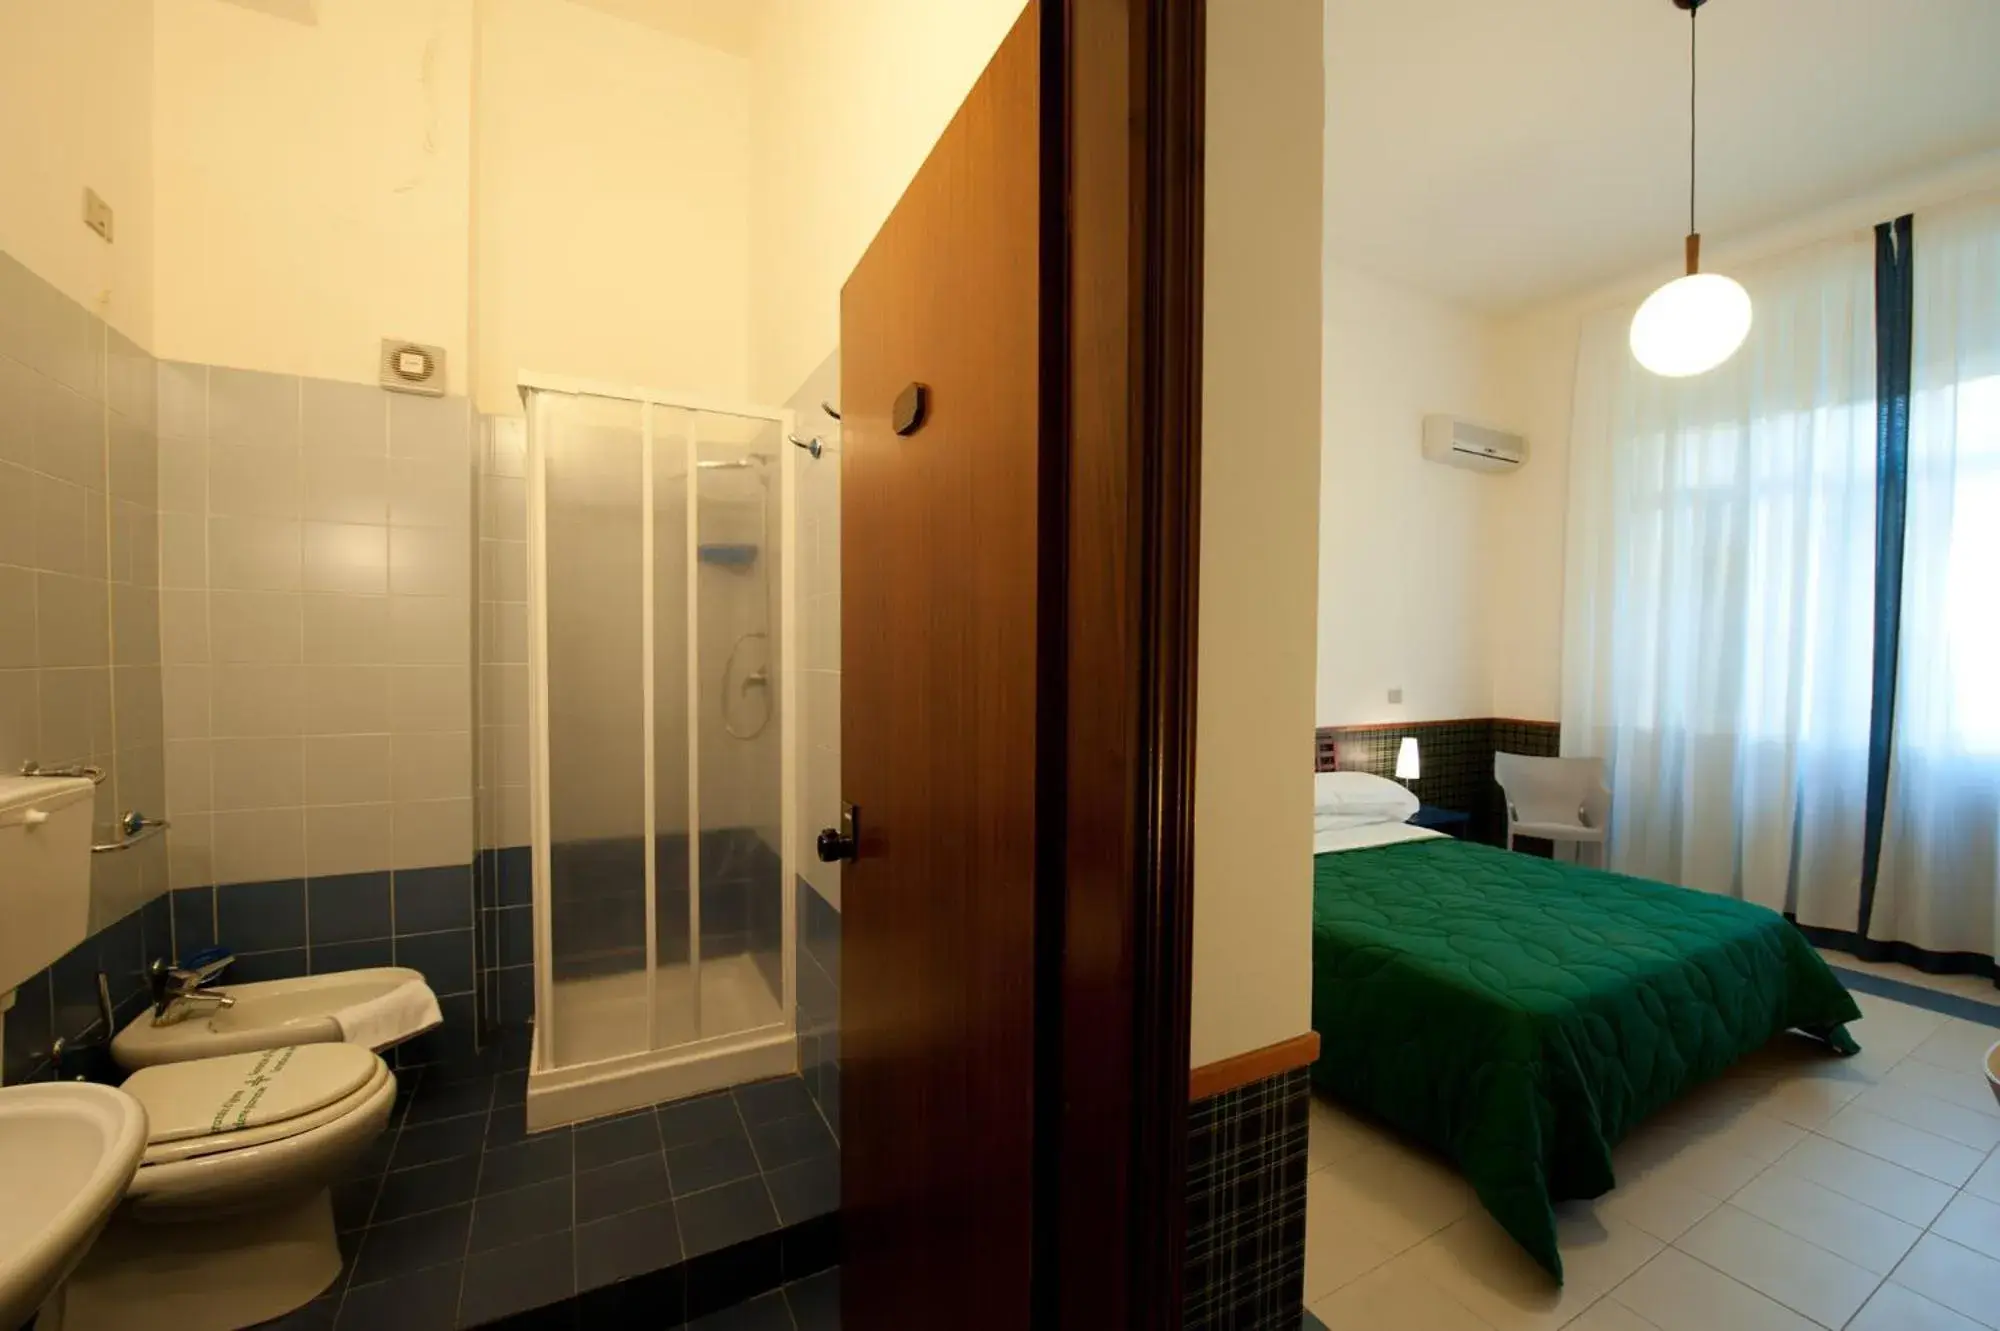 Bathroom in Hotel Villa Sturzo